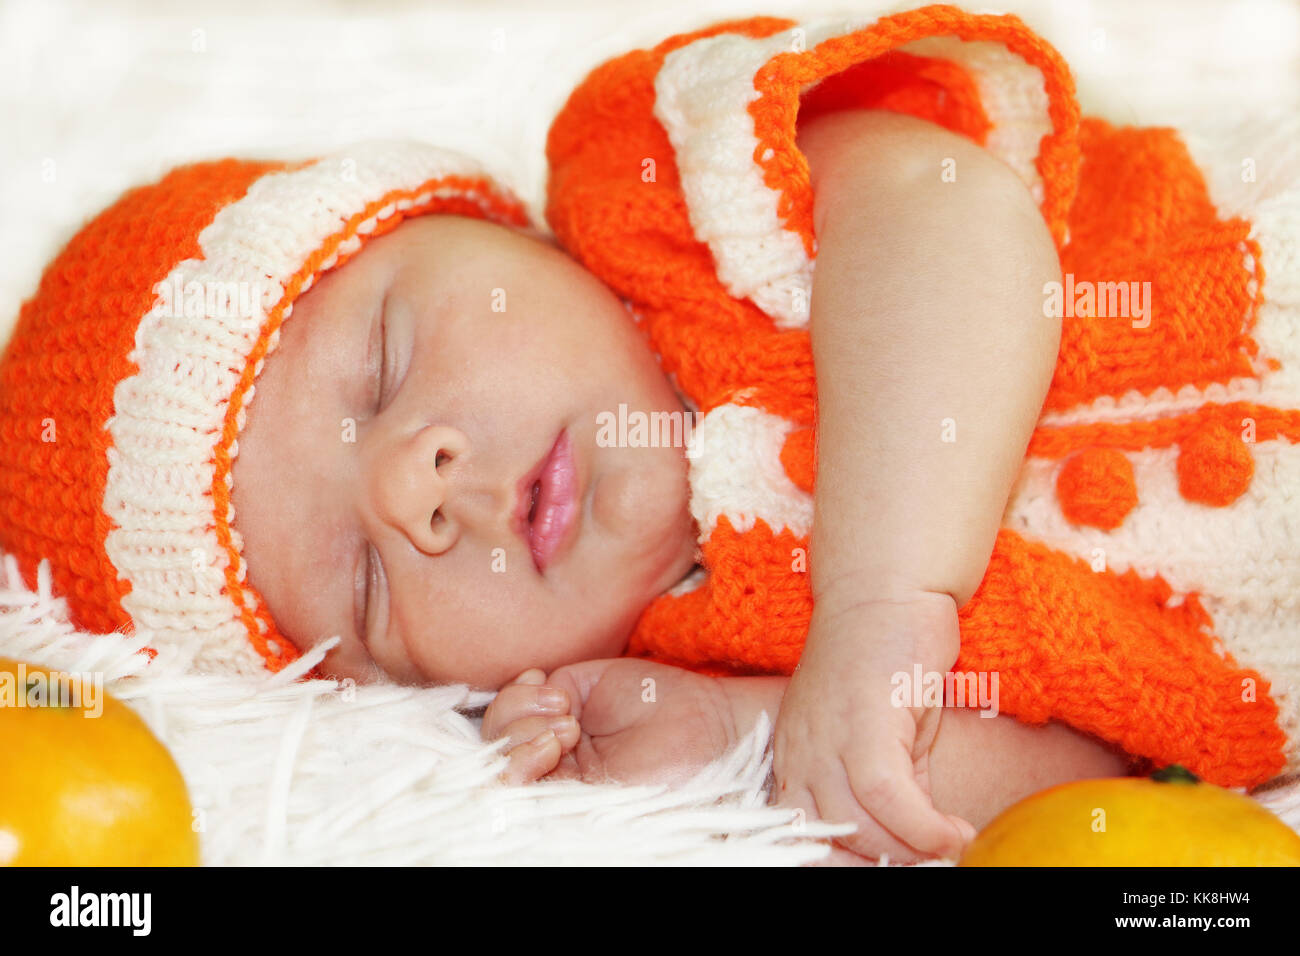 Cute friedlich schlafen neugeborene Baby in einen gestrickten orange Kostüm mit Orangen um ihm auf weißen Decke gekleidet. Stockfoto